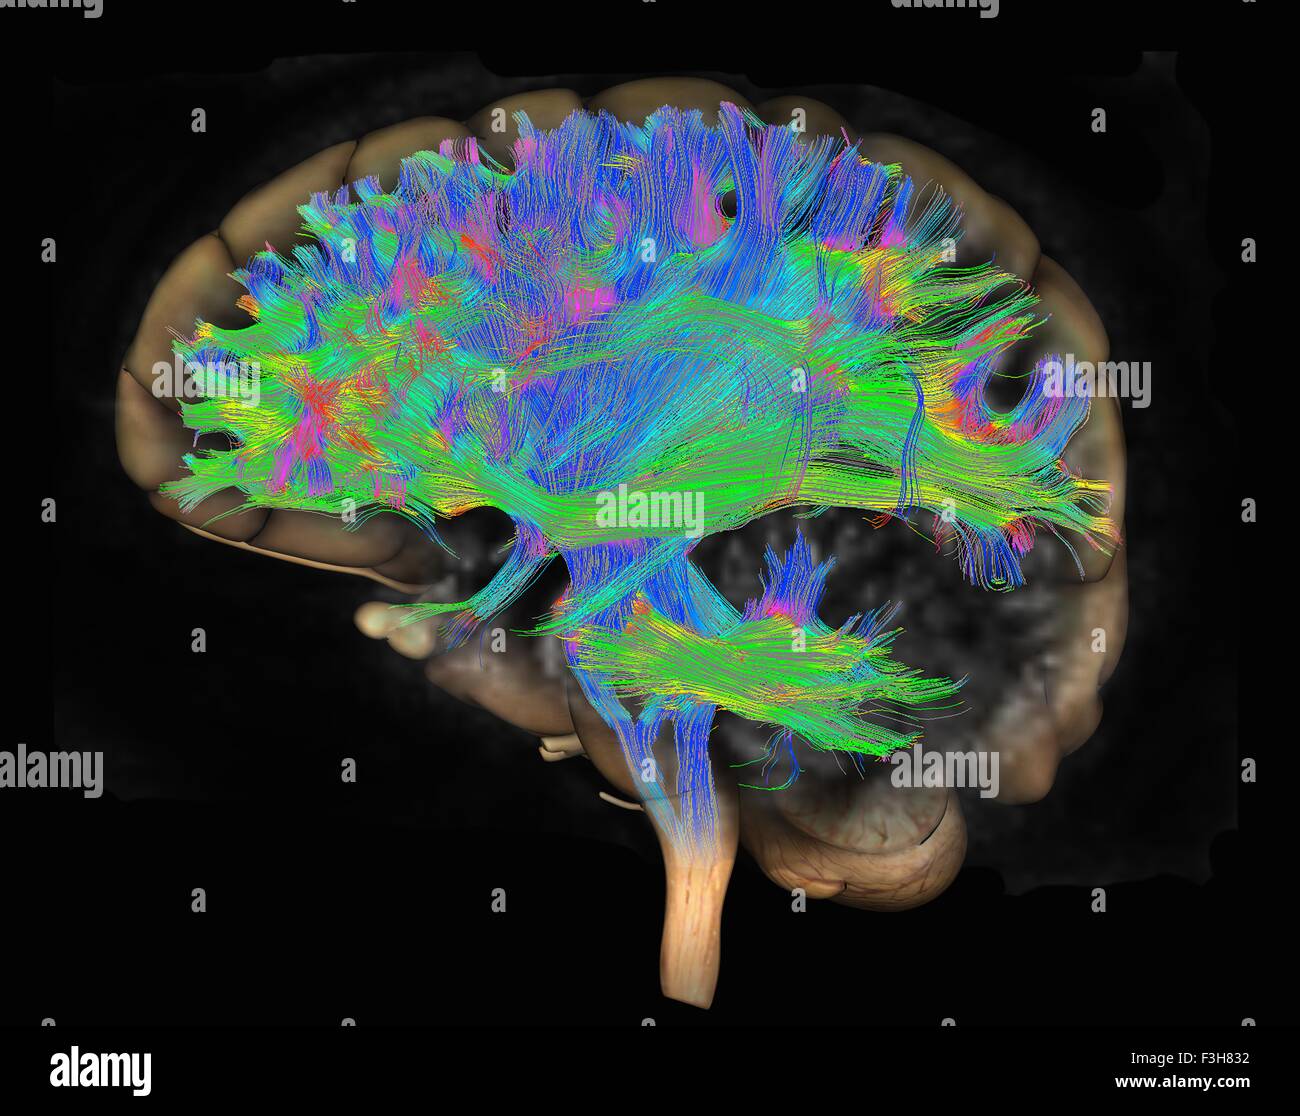 Verbreitung MRI, auch bezeichnet als Diffusion Tensor Imaging oder DTI, des menschlichen Gehirns Stockfoto